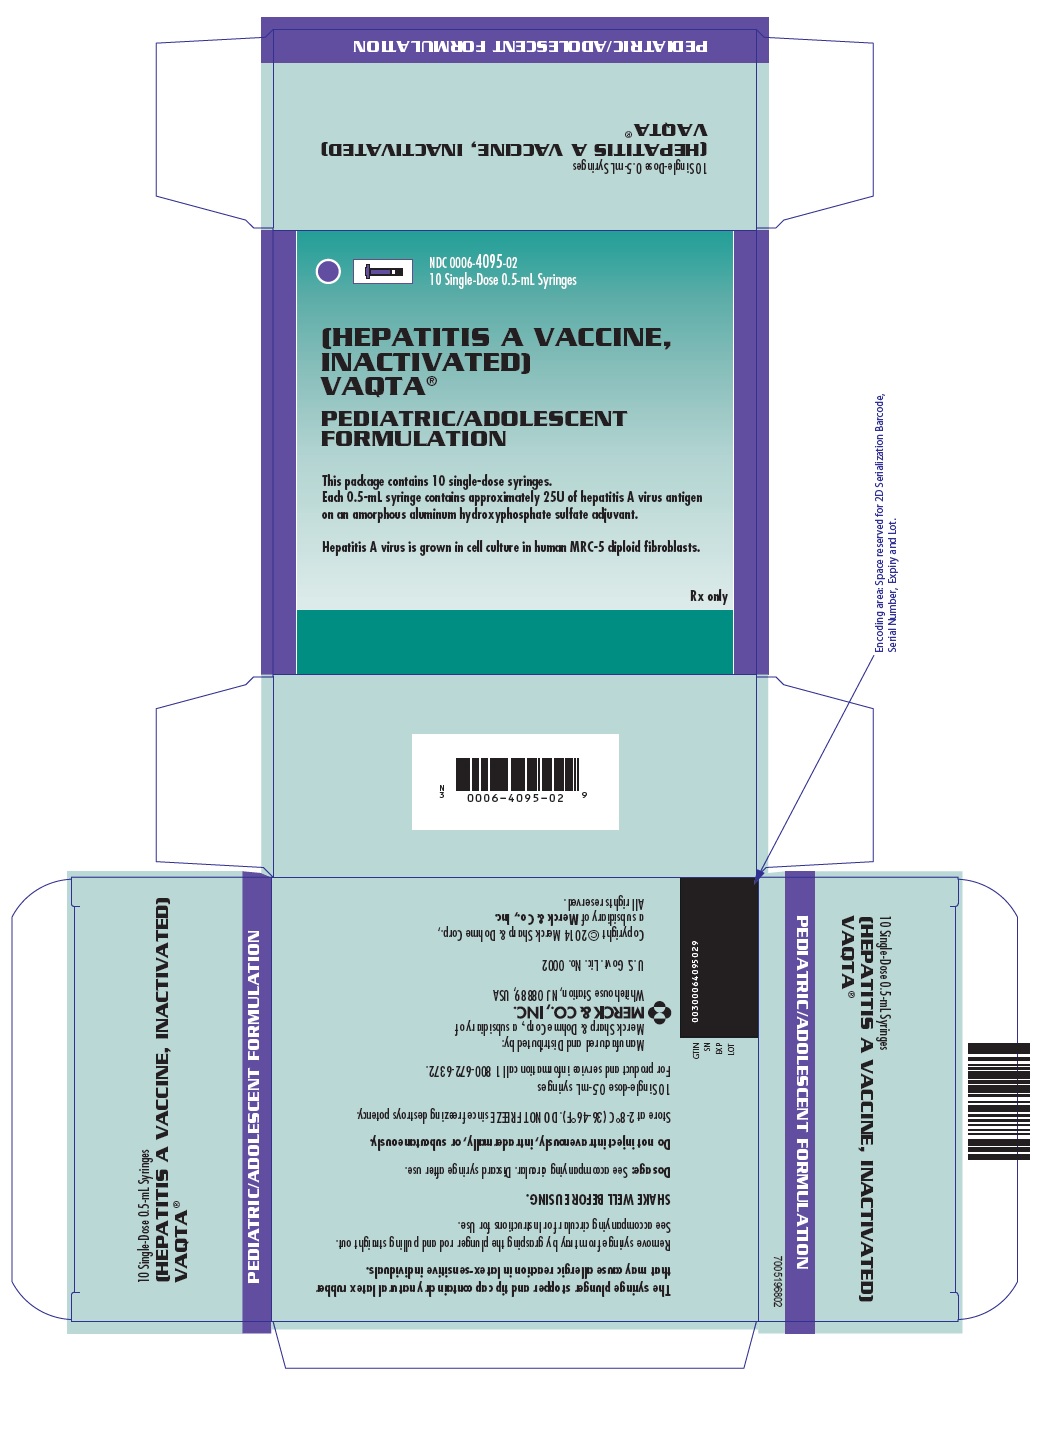 PRINCIPAL DISPLAY PANEL - 0.5 mL Syringe Carton